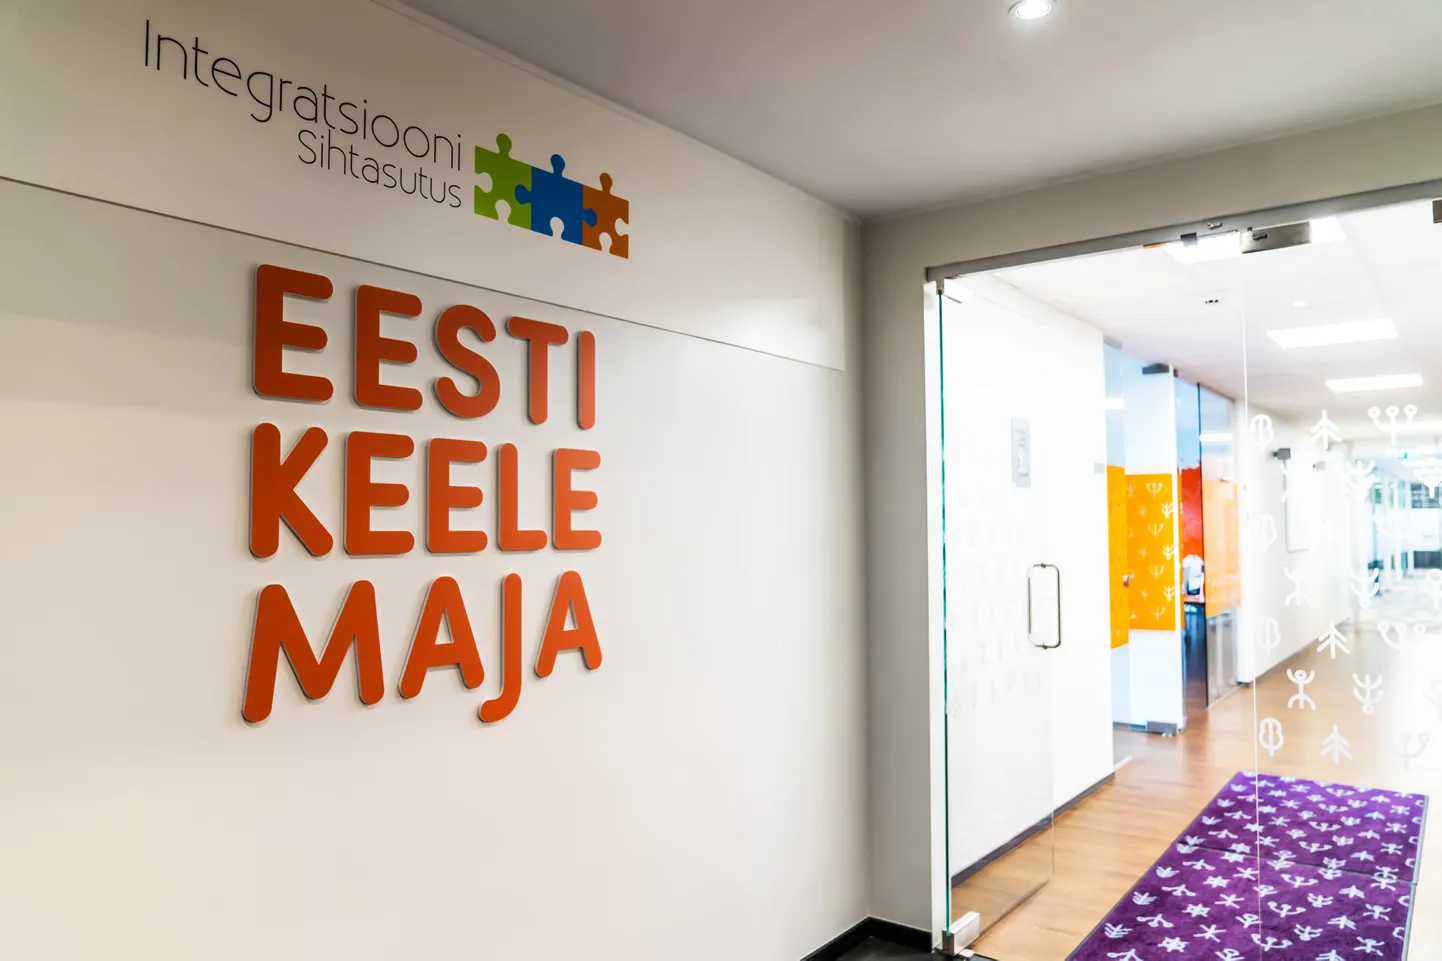 В программе друзей эстонского языка Keelesõber участвуют 900 наставников, готовых общаться с изучающими язык, чтобы помочь им говорить по-эстонски так же хорошо.